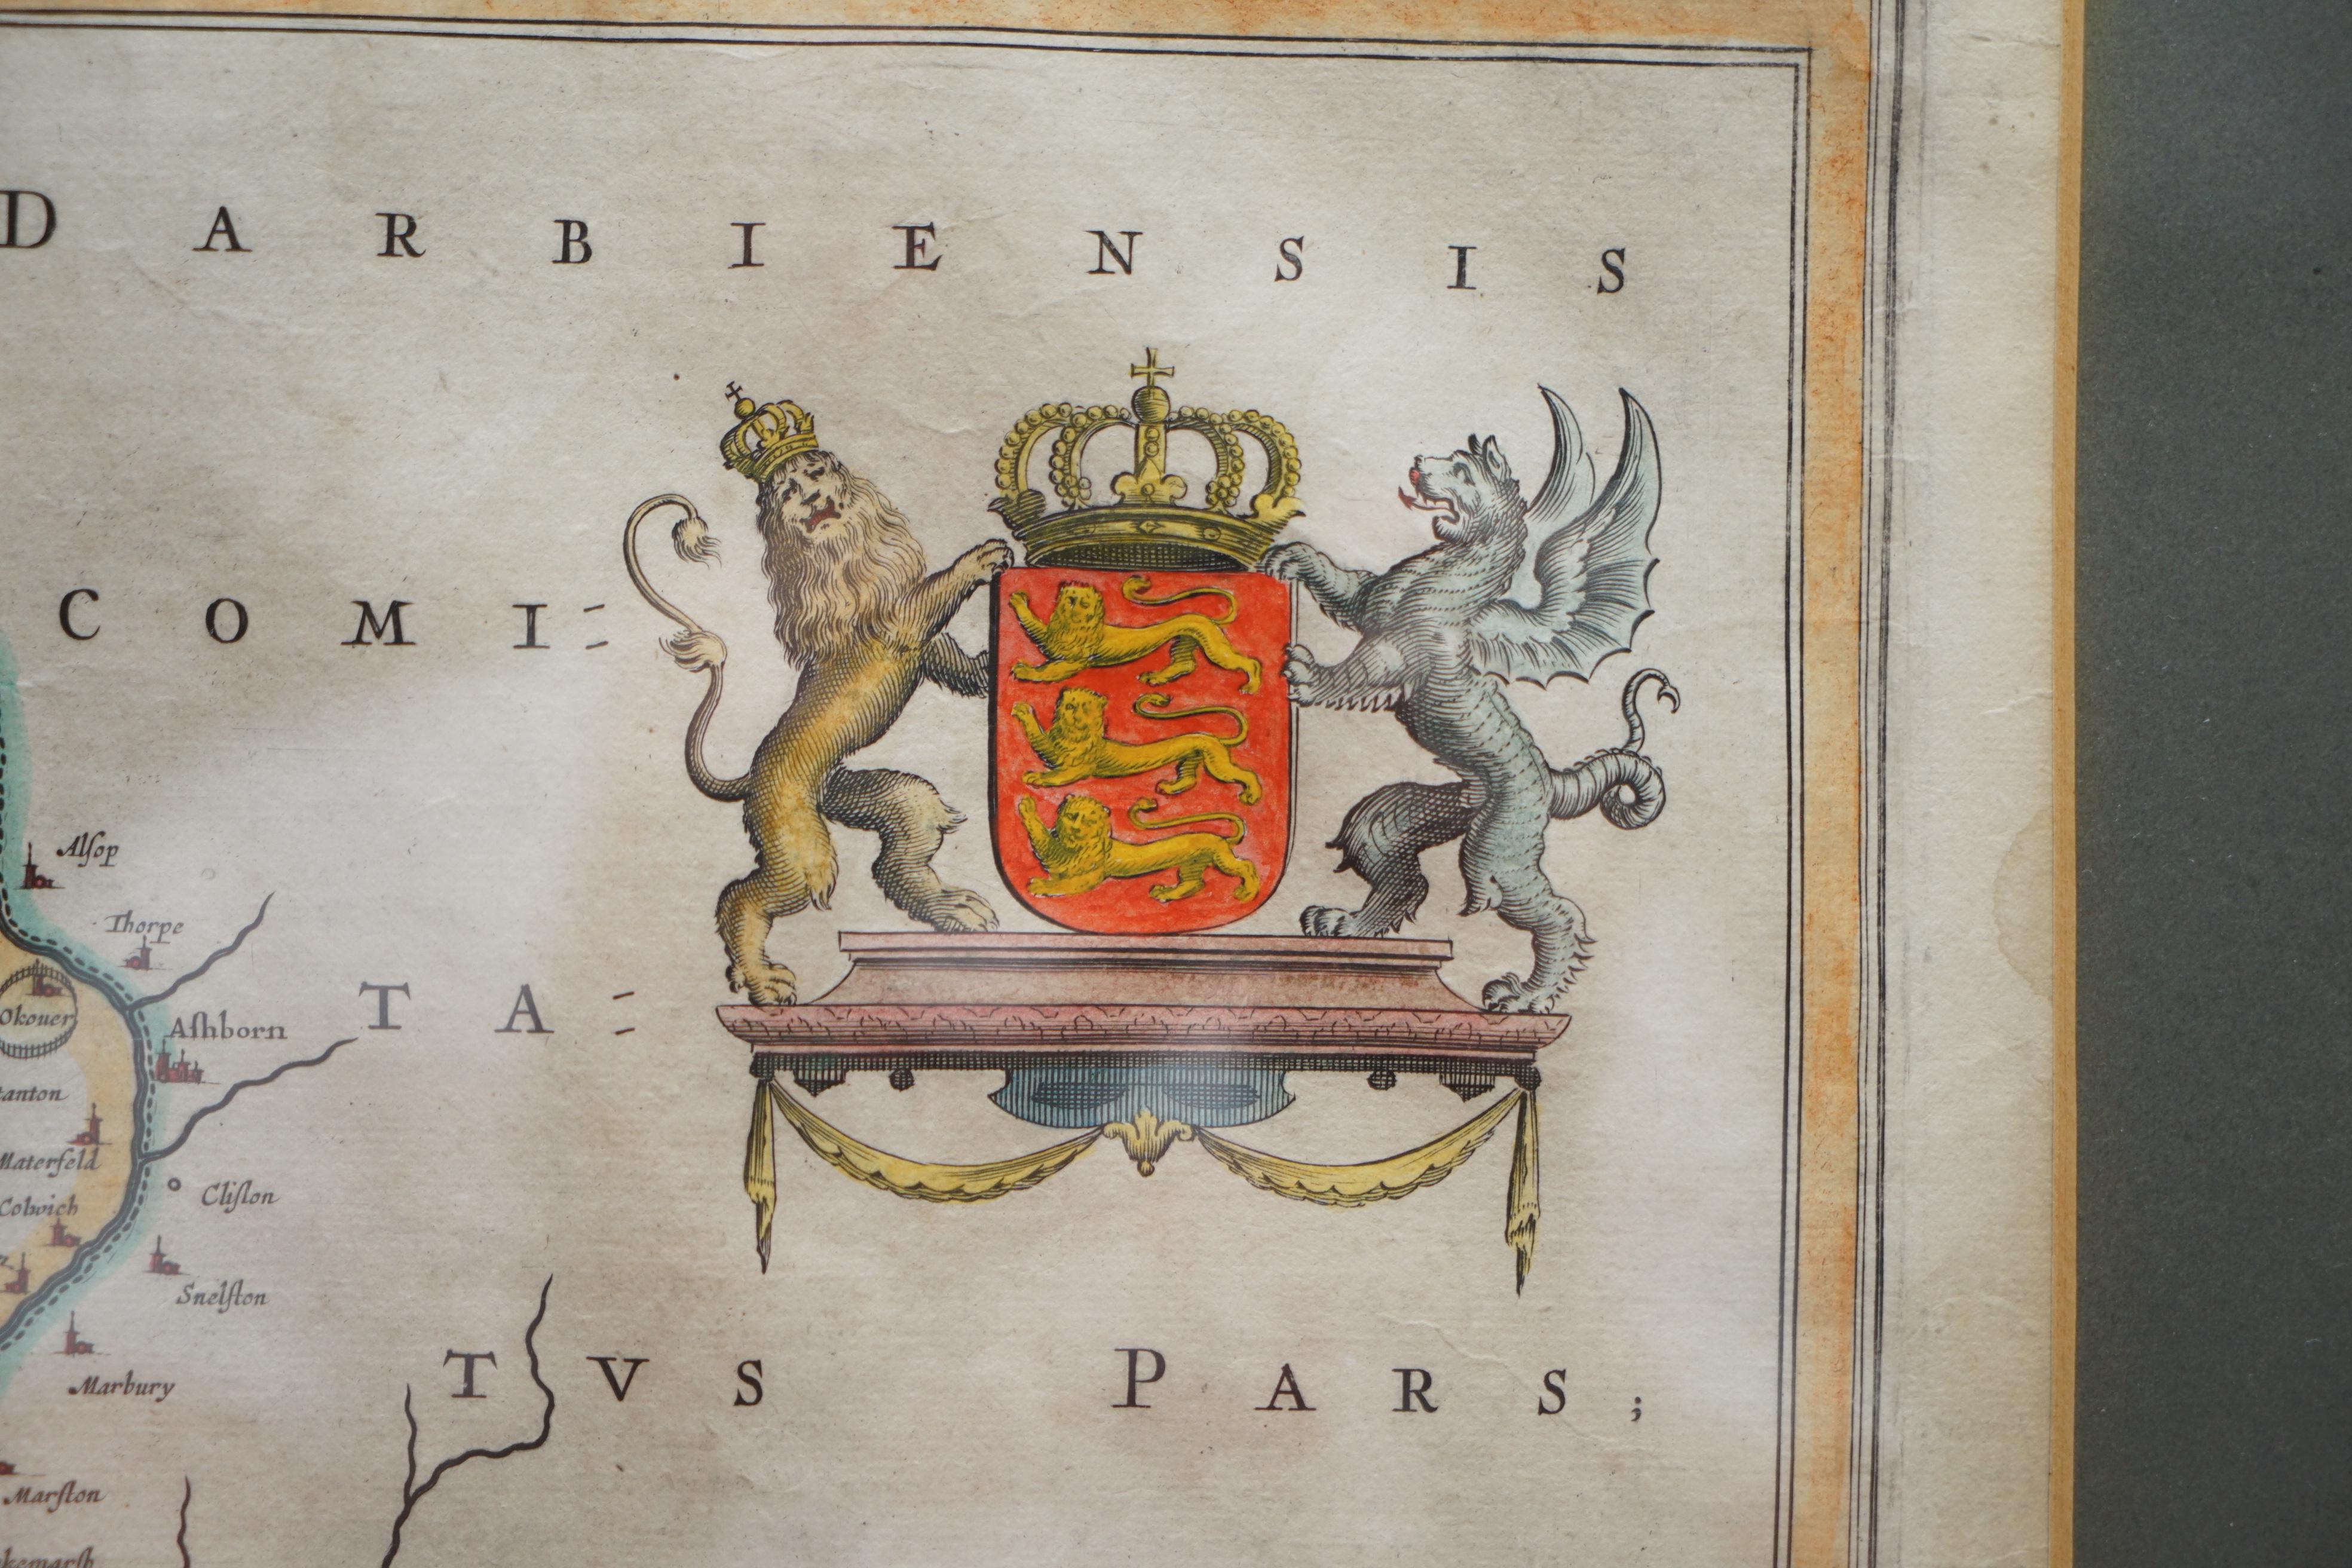 Nous sommes ravis d'offrir à la vente cette belle carte ancienne du Cheshire imprimée en 1645 à Amsterdam Staffordiensis Comitatvs Vulgo

J'ai trois de ces cartes, chacune couvrant une partie différente du pays, les deux autres sont listées sous